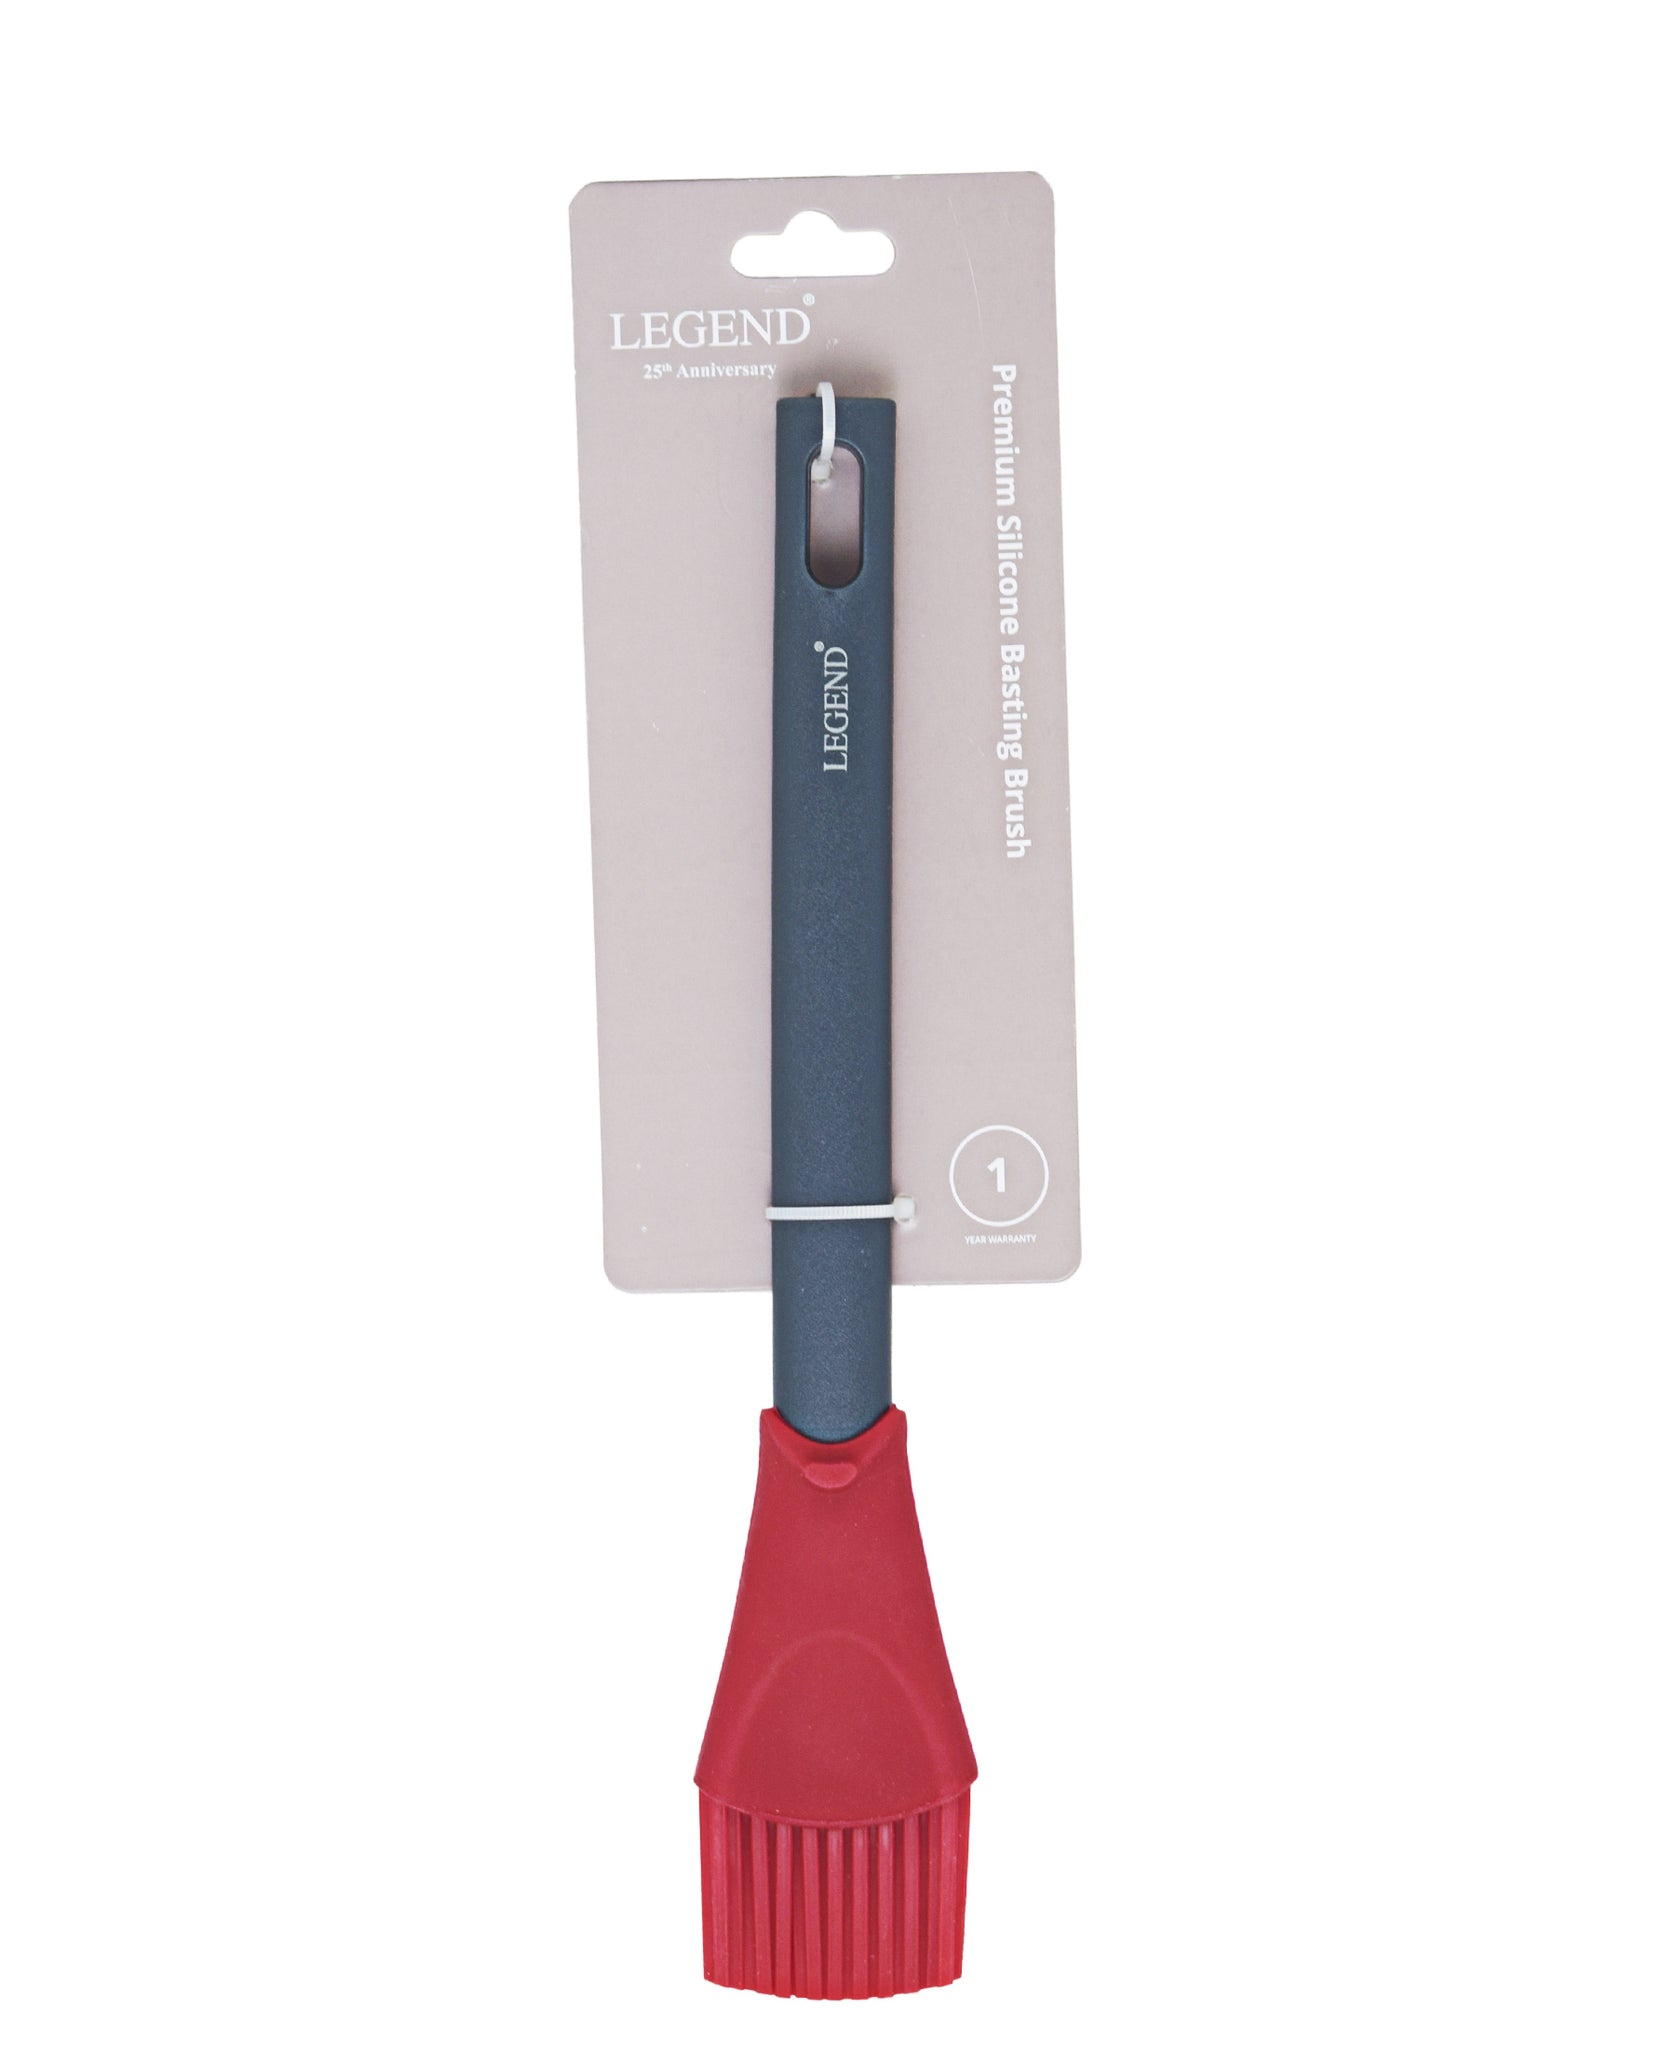 Legend Premium Silicone Basting Brush - Grey & Red